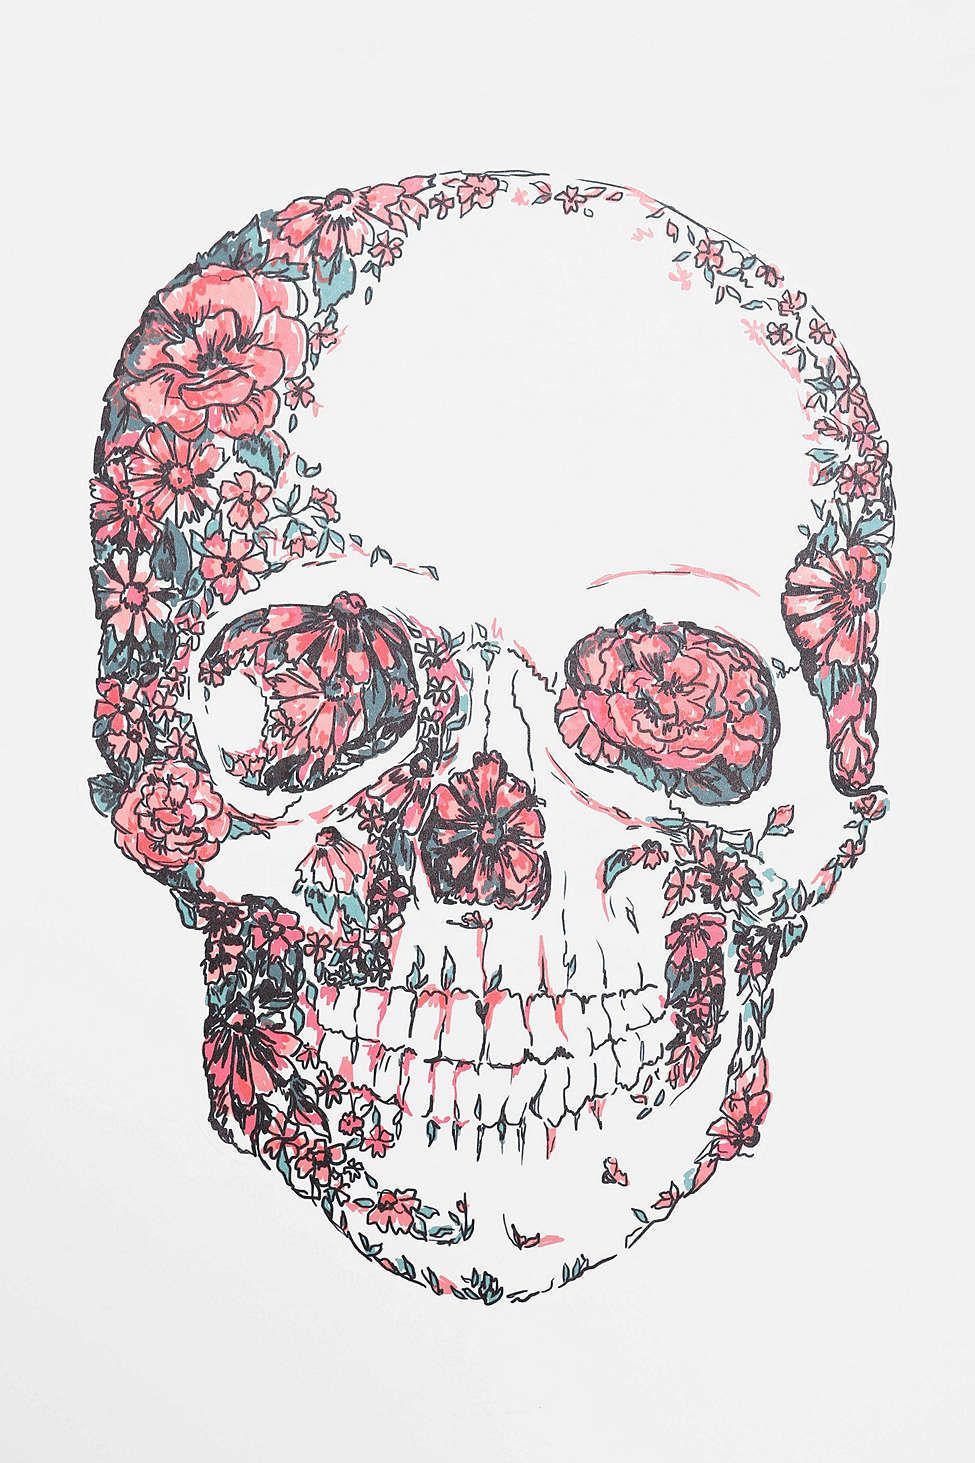 Girl Skull Wallpapers